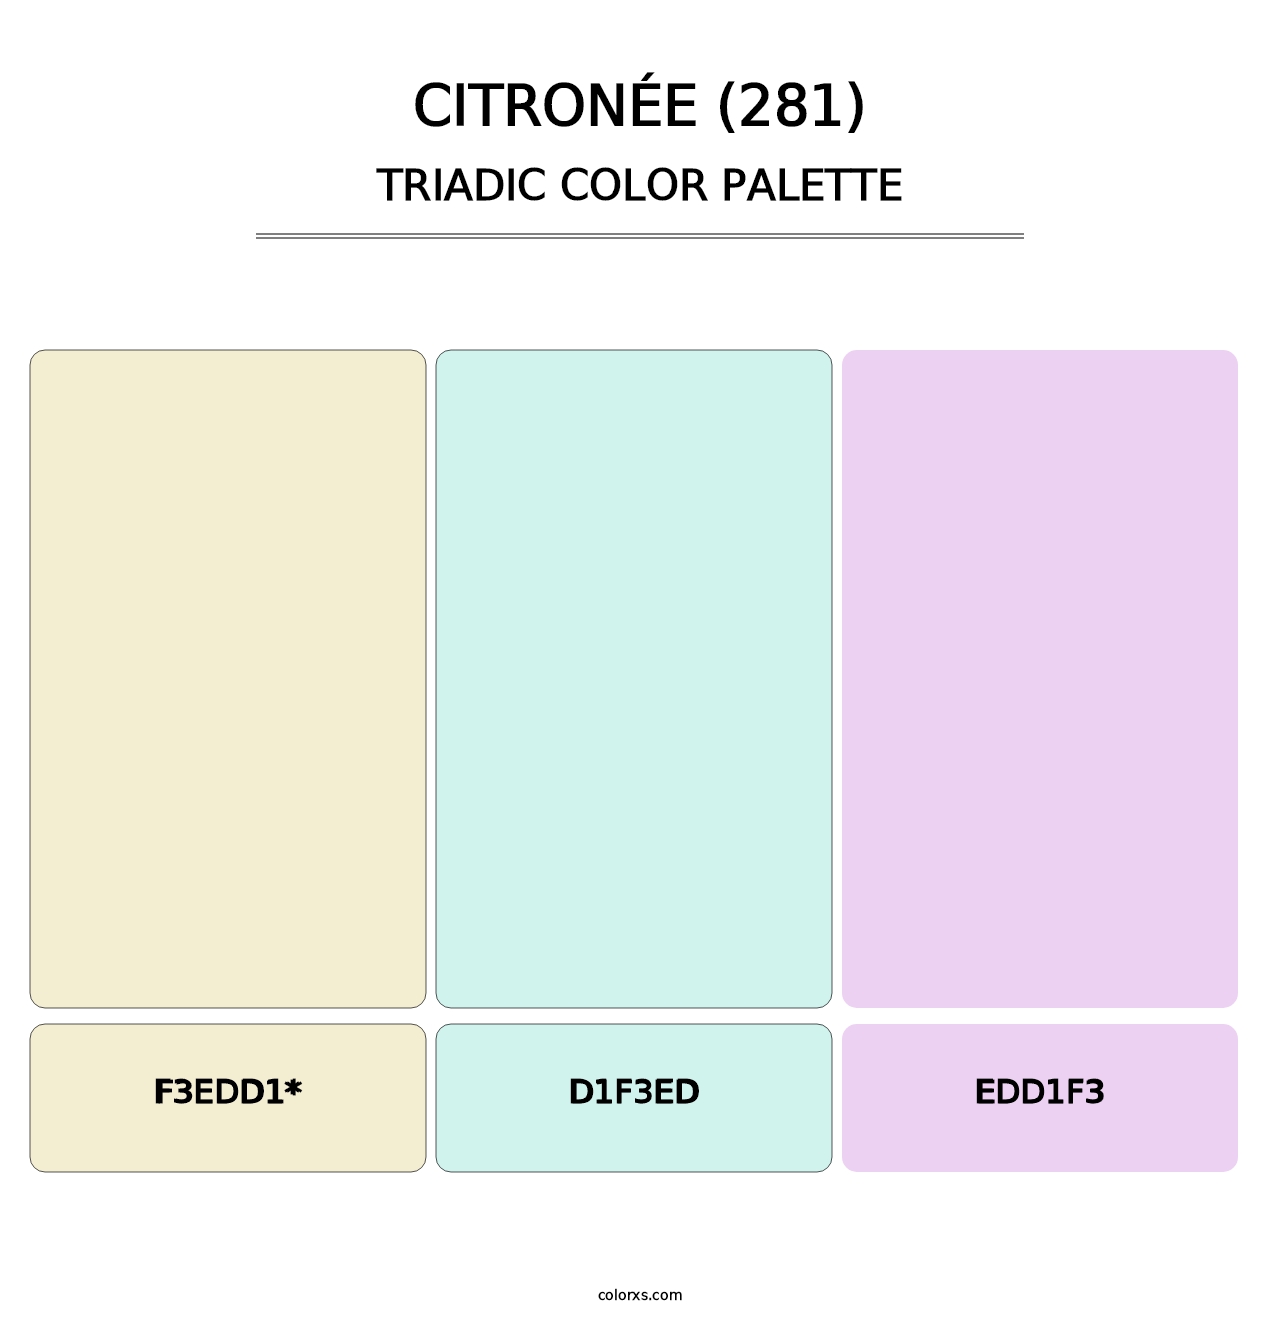 Citronée (281) - Triadic Color Palette